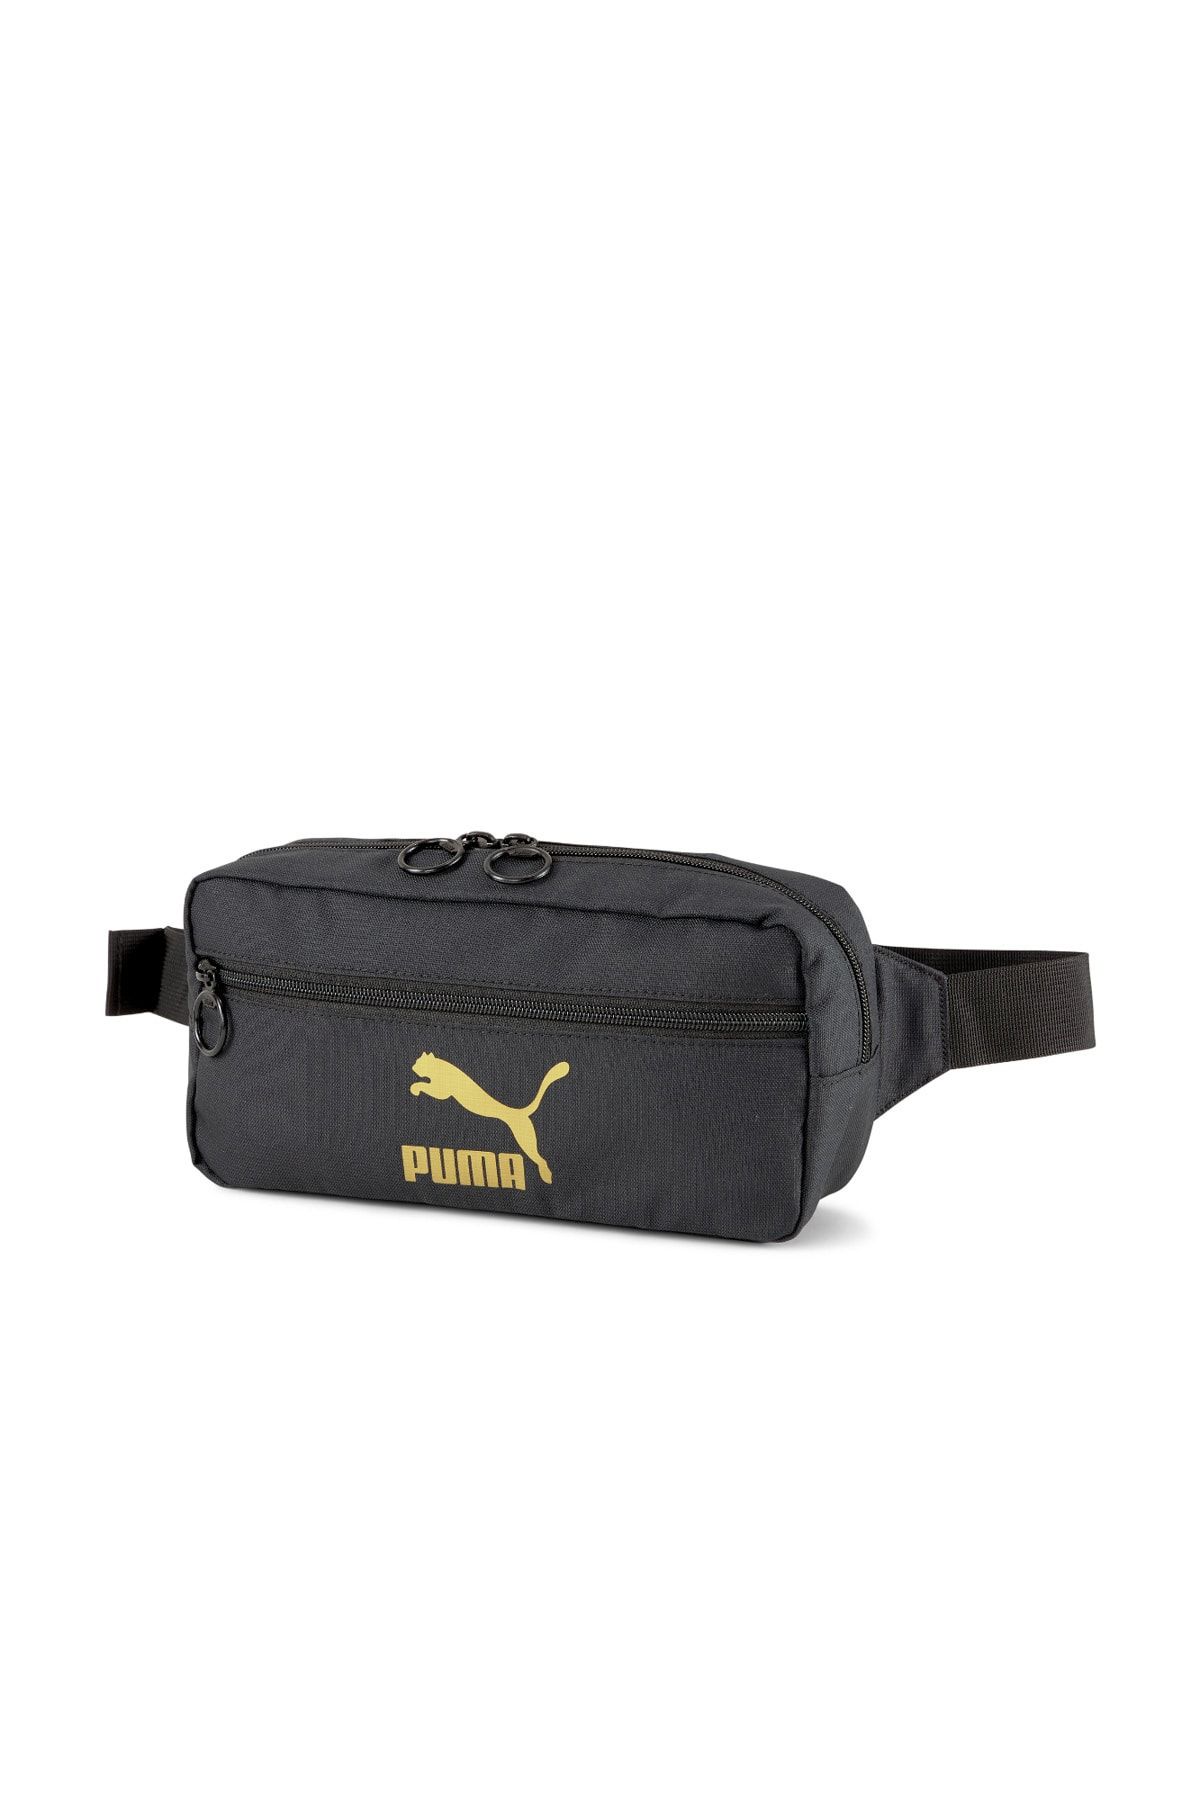 Puma Unisex Bel Çantası - Originals Urban Waist Bag - 07800601